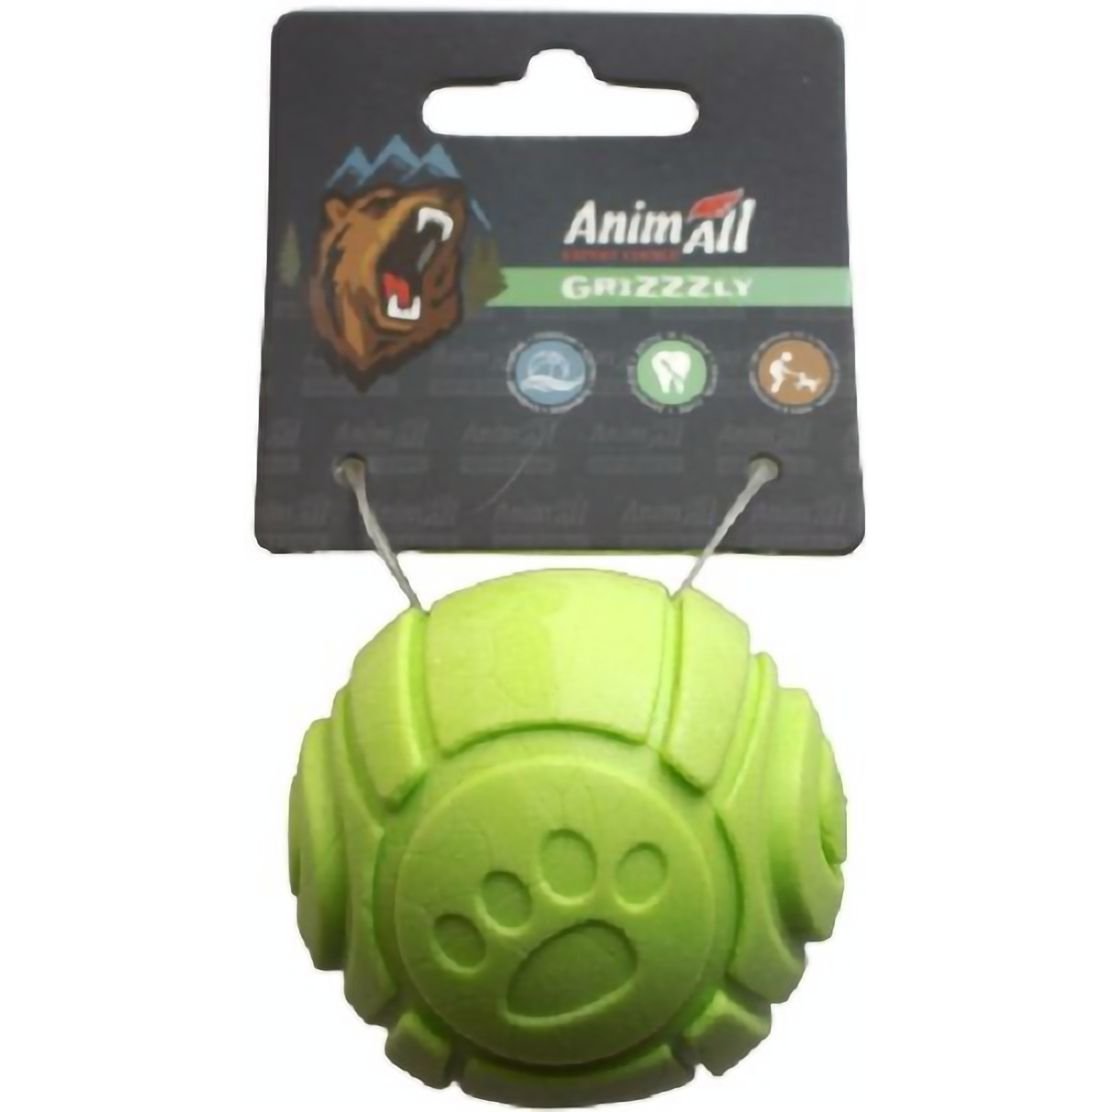 Іграшка для собак AnimAll Fun AGrizZzly М'ячик з ароматом яблука зелена - фото 1